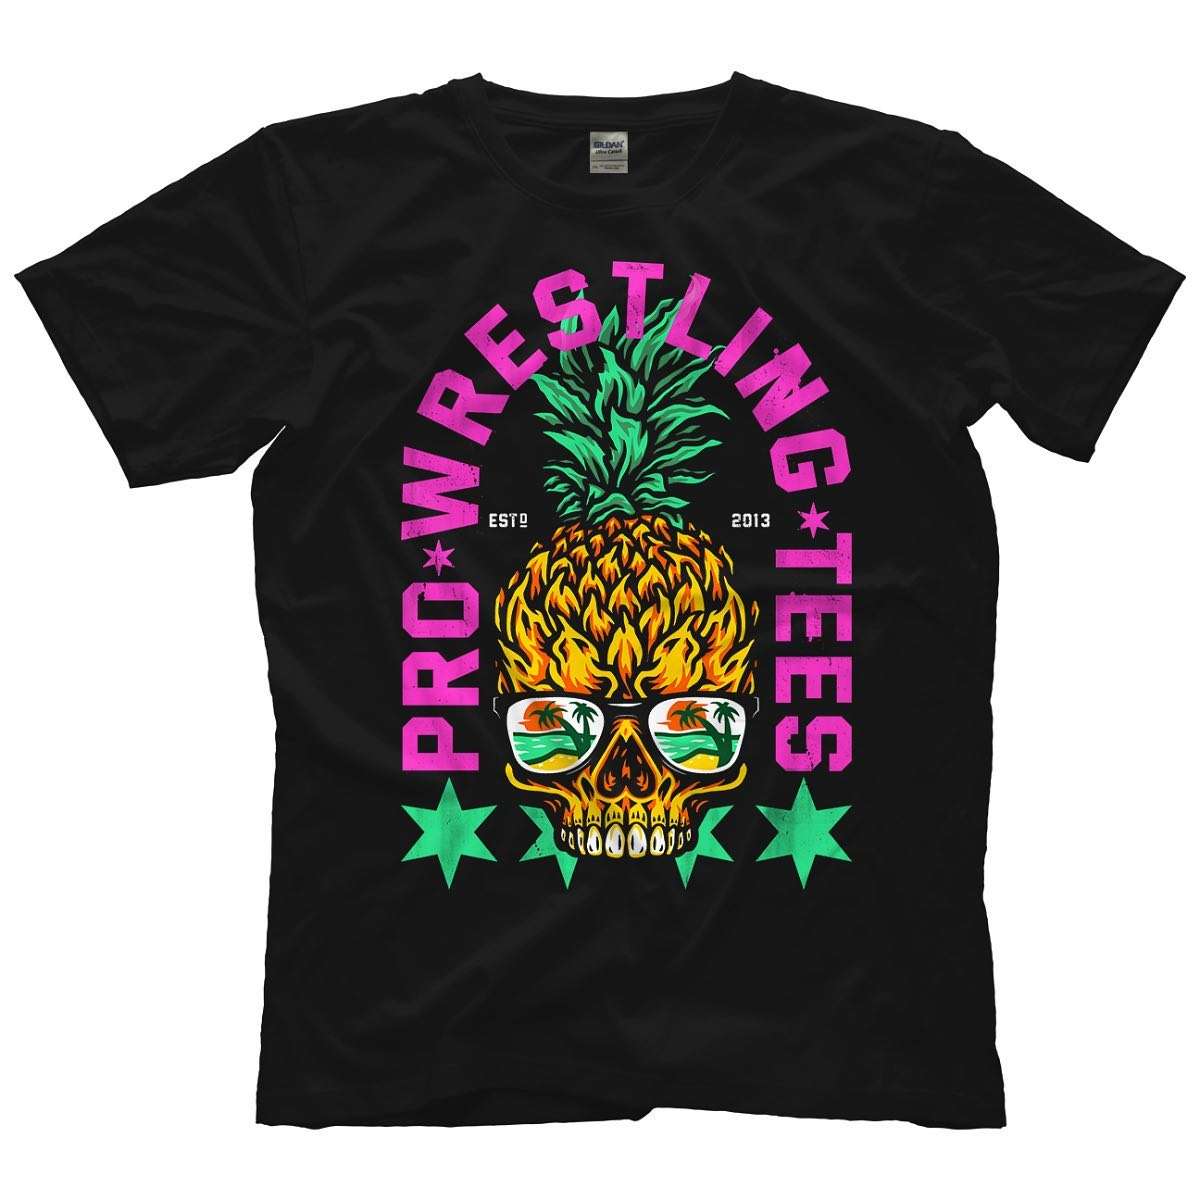 Pro wrestling tees - Pineapple skull, professional wrestler